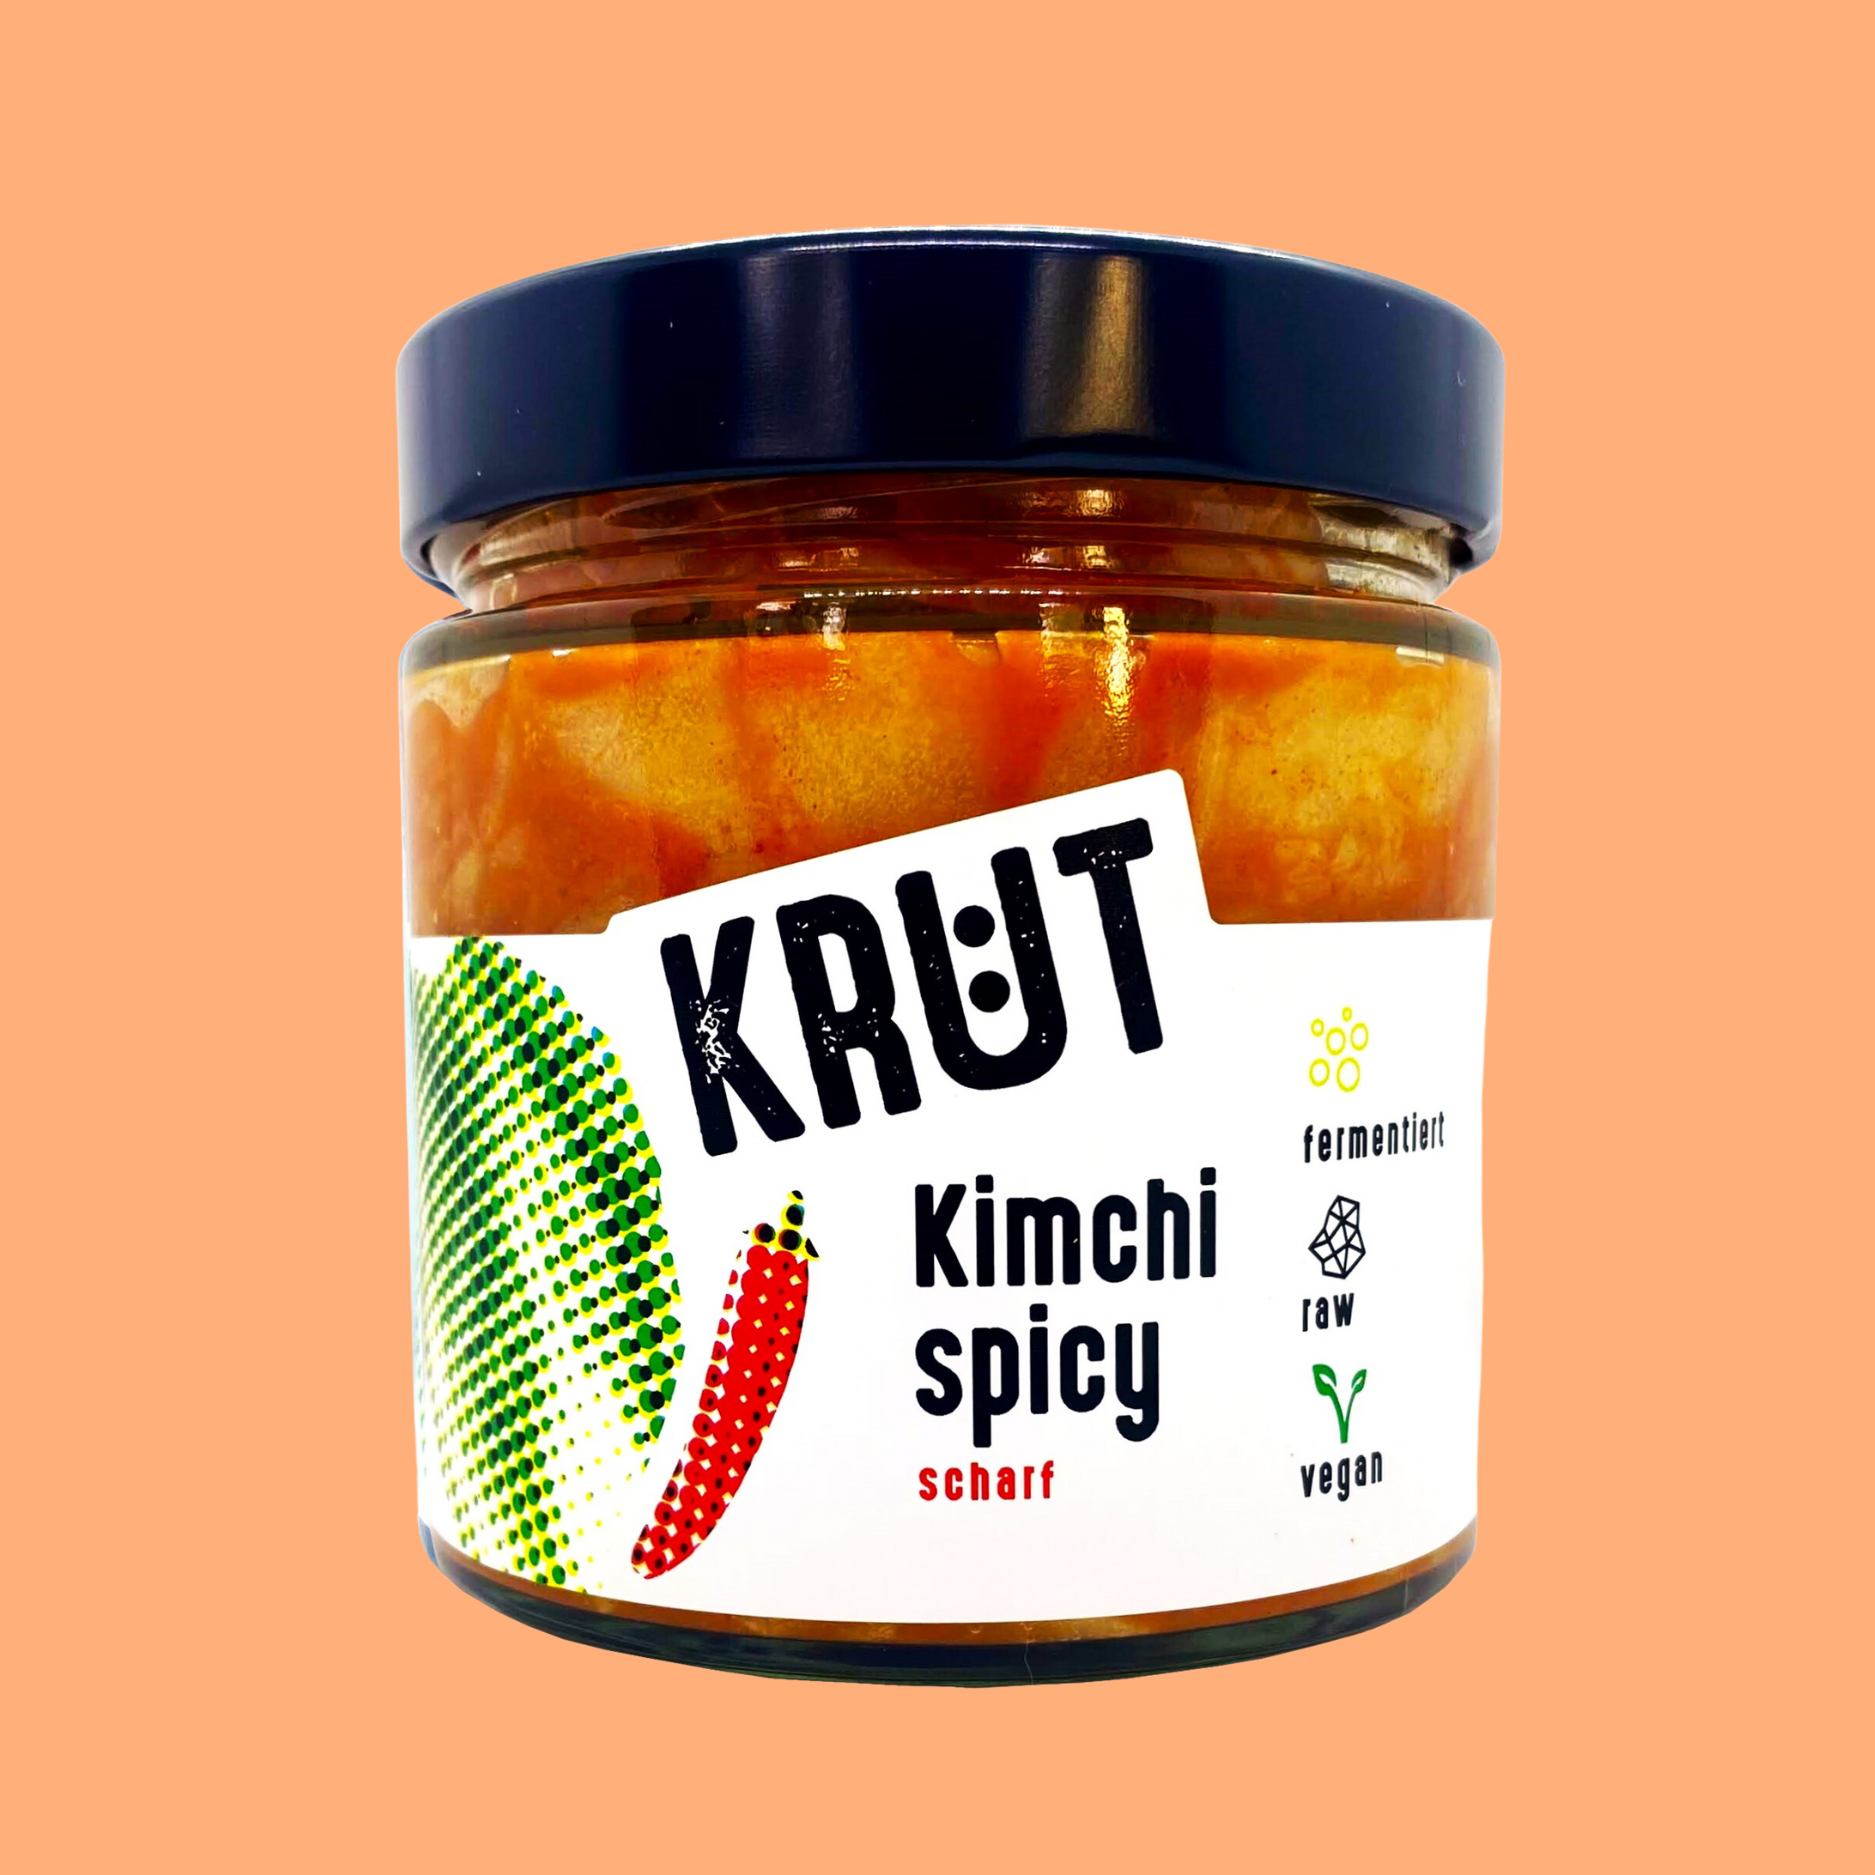 6er-Paket Kimchi spicy, je 300g